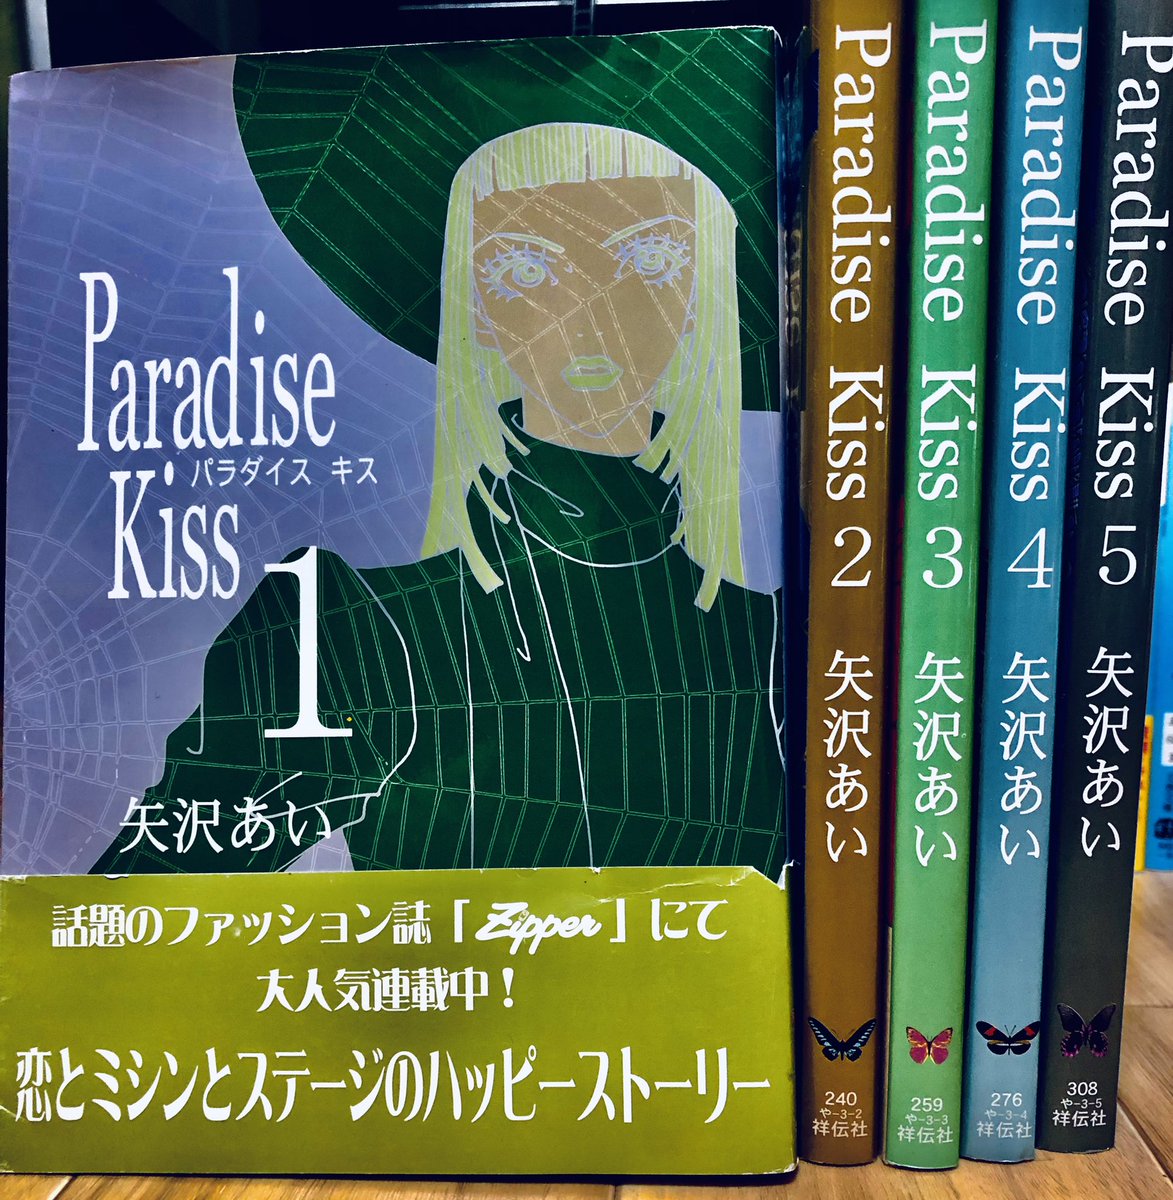 さらっと告知しておりますが、8月1週目の第68回はウィンターオブラブ計画(@winteroflove_ )のお二人をお迎えして、矢沢あい『Paradise Kiss』についてお話します〜〜！！お楽しみにっ🦈　#kokosuna